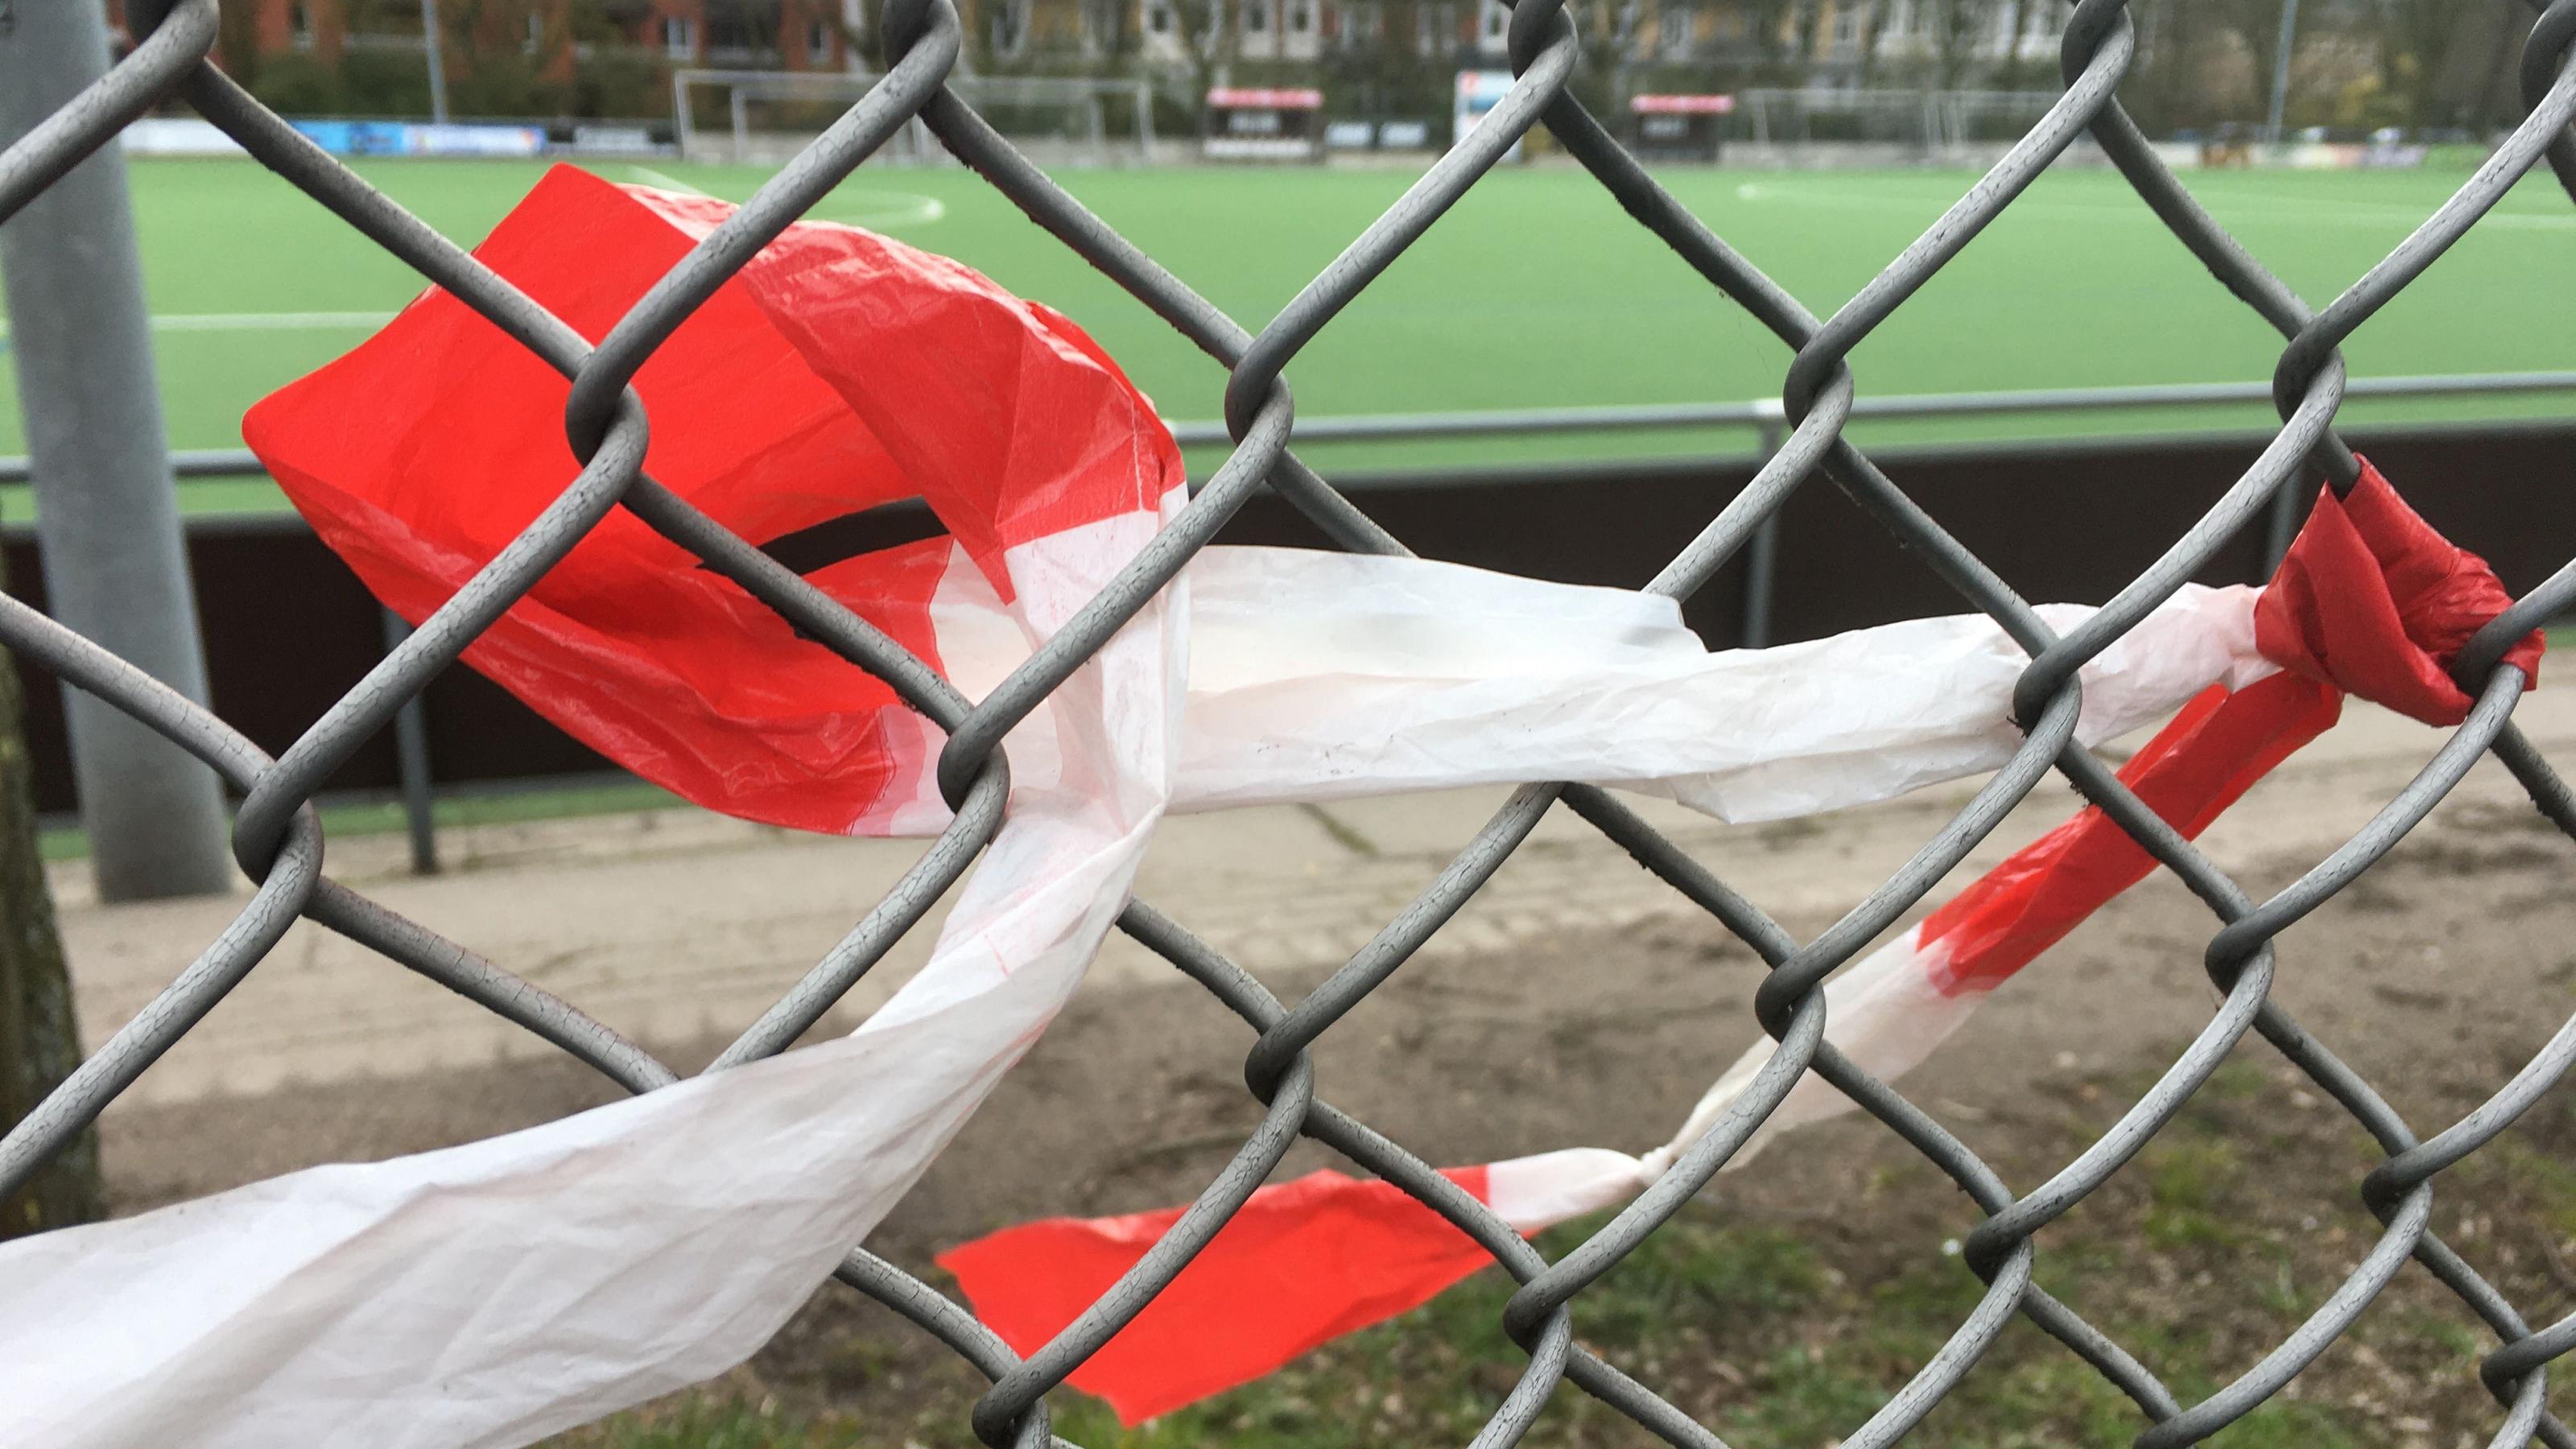 Ein rot-weißes Flatterband ist an einem Draht eines Maschendrahtzauns festgeknotet und windet sich von da nach links locker durch das Geflecht. Im Hintergrund ist ein Fußballplatz mit hellgrünen Kunststoff-Belag zu sehen.